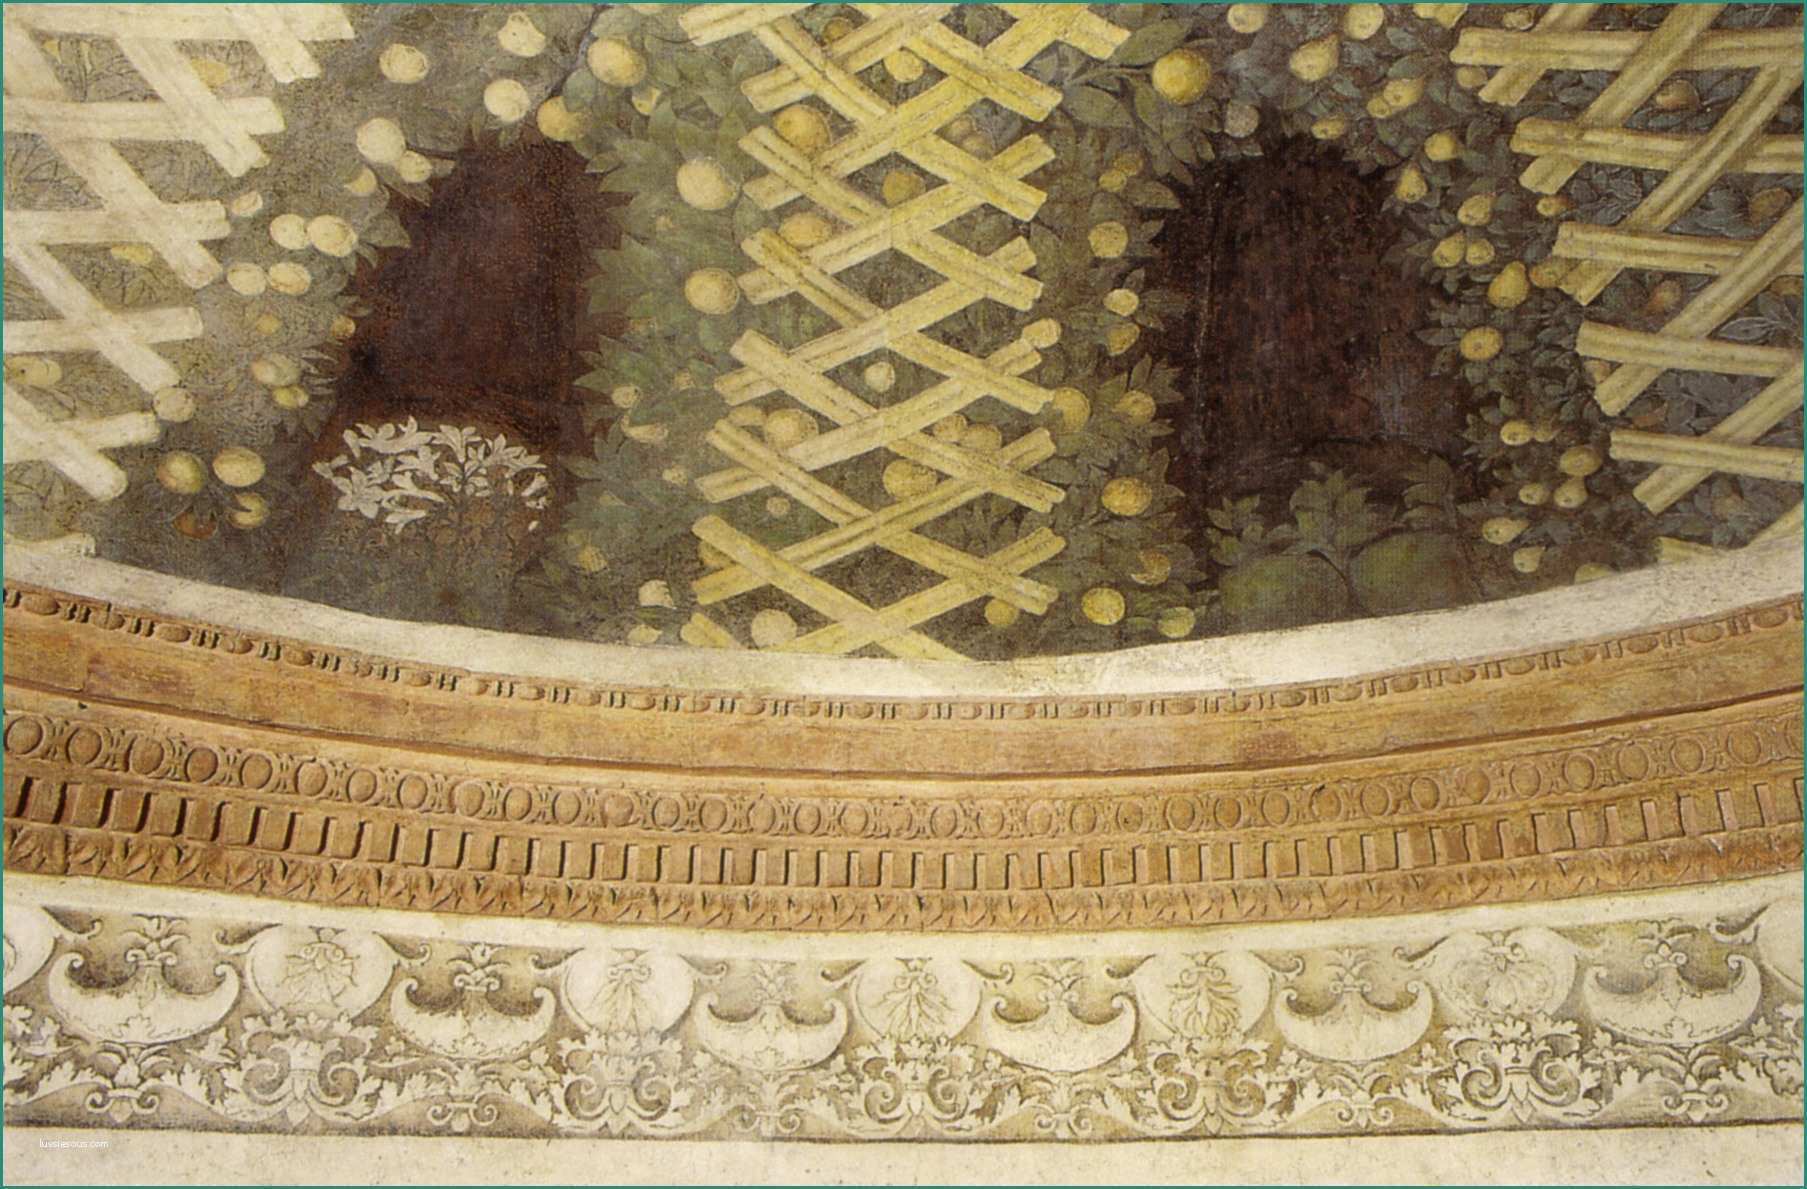 Pergolato A Cupola E Cappella Funeraria Di andrea Mantegna Wikiwand